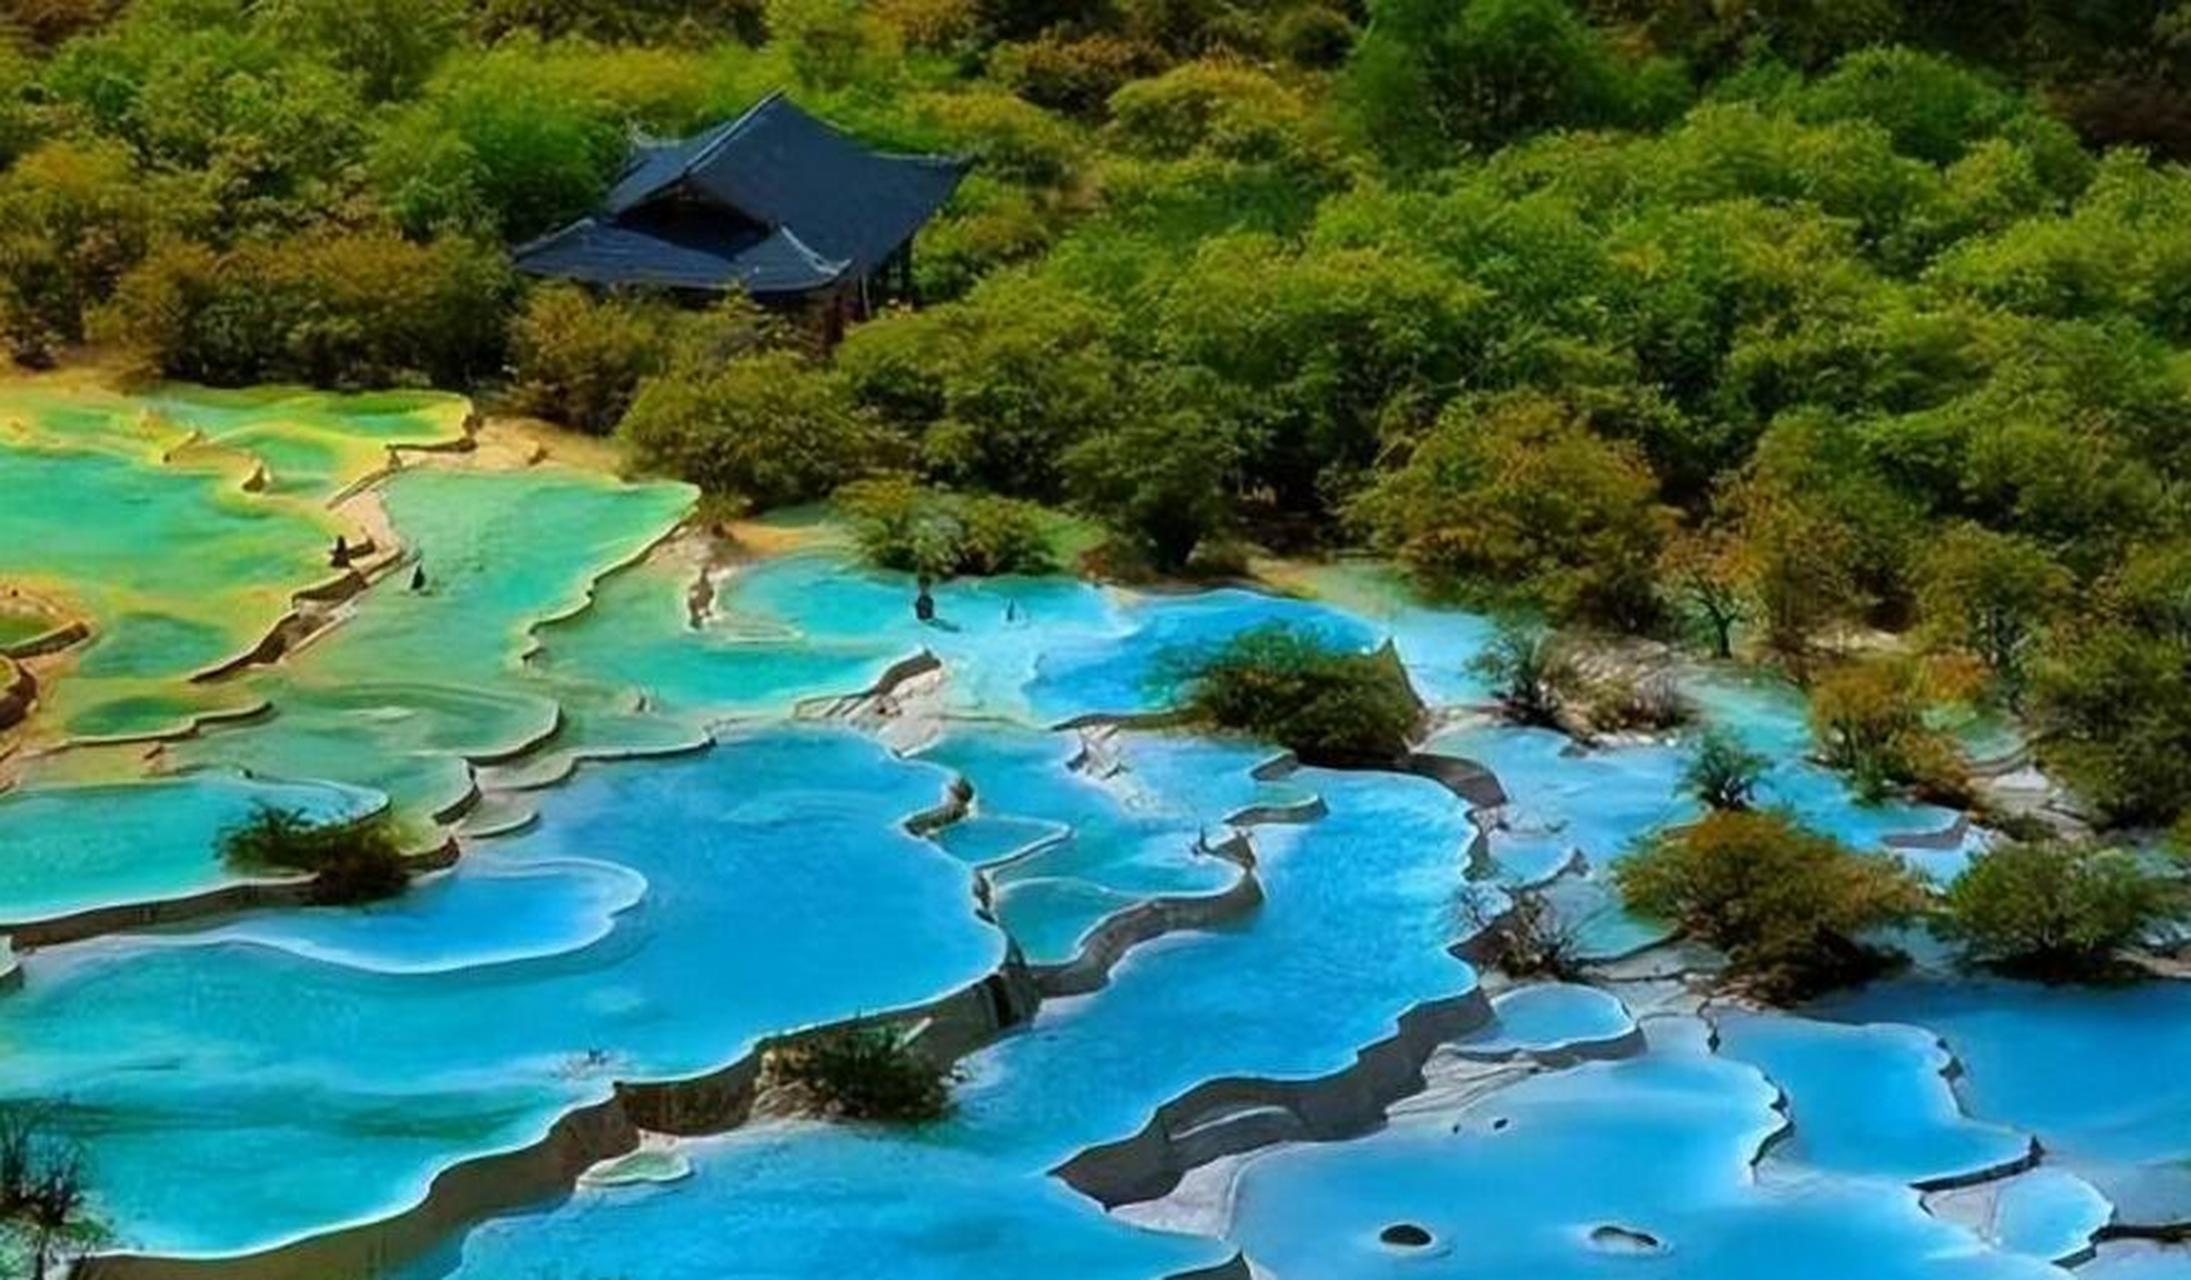 黄龙风景名胜区,是一座拥有无数彩池的绝美之地